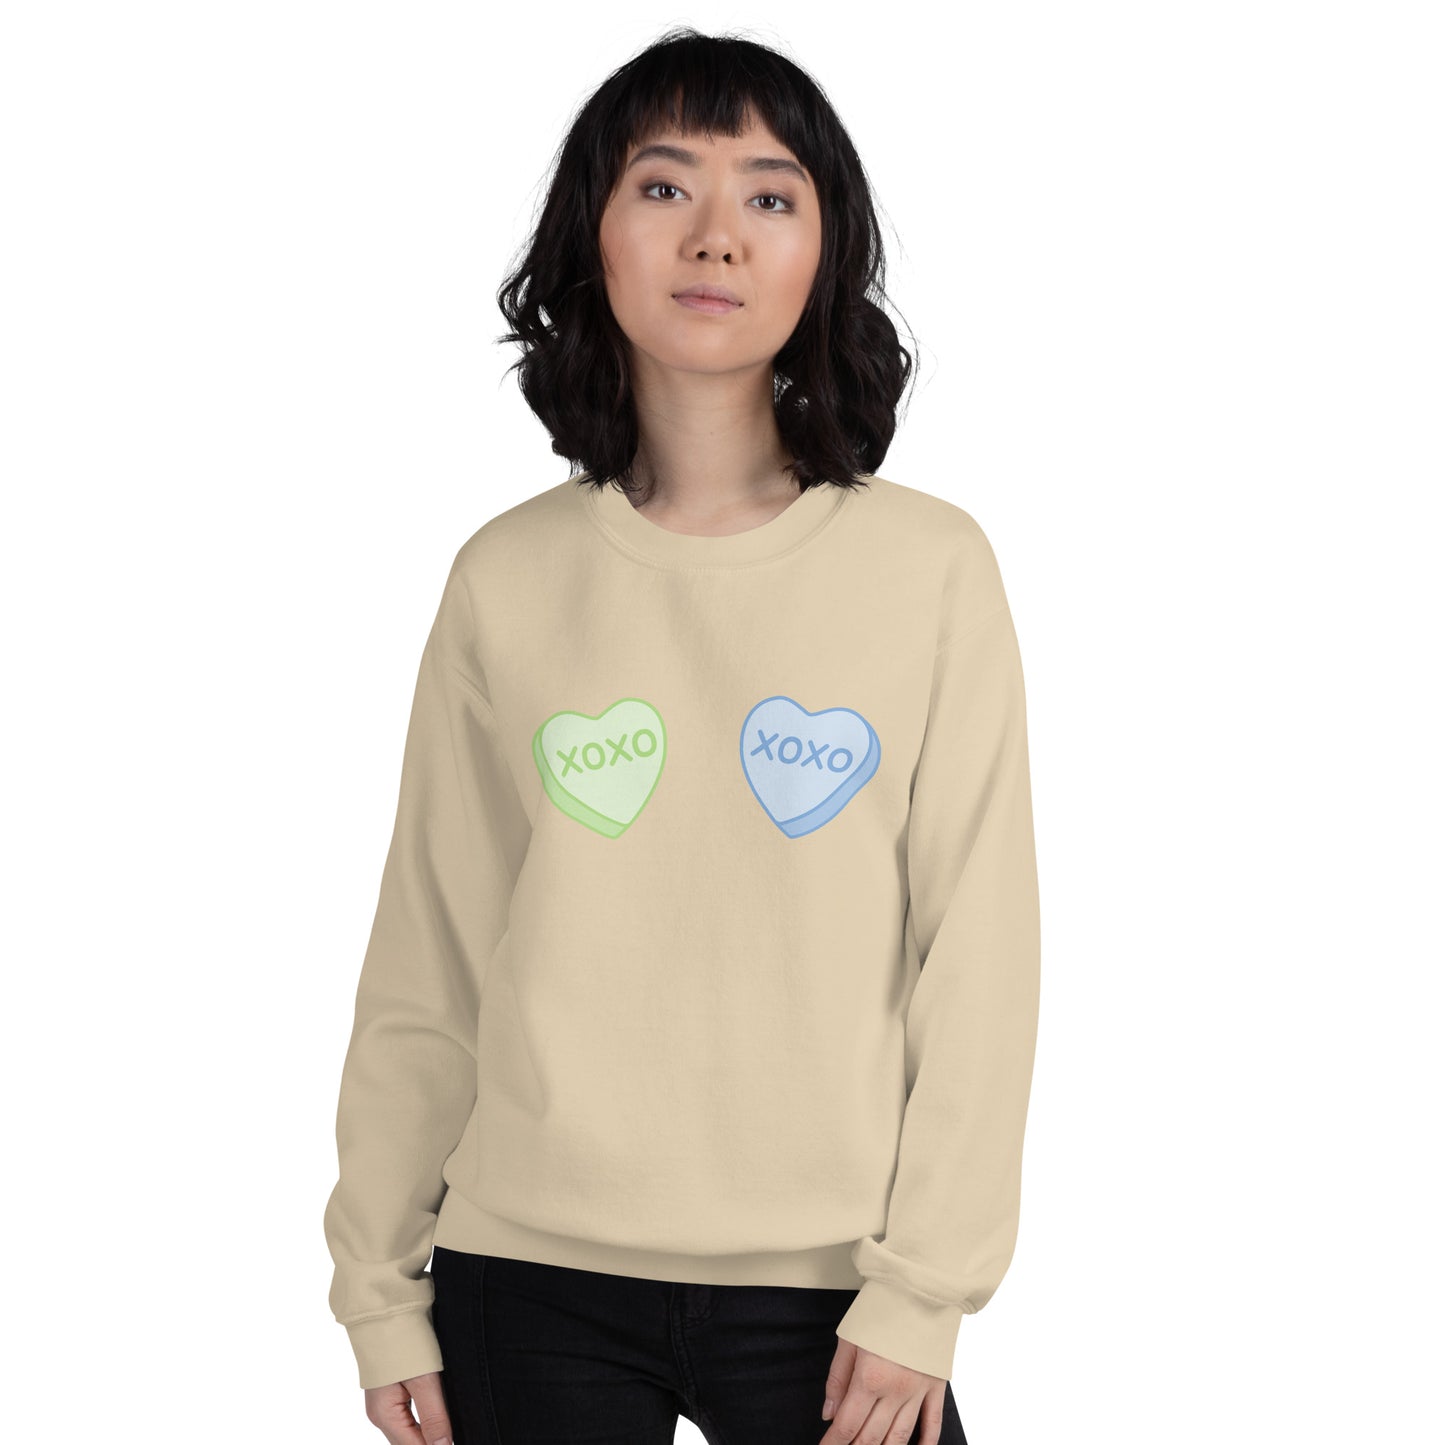 Candy Heart Boobs Unisex Sweatshirt